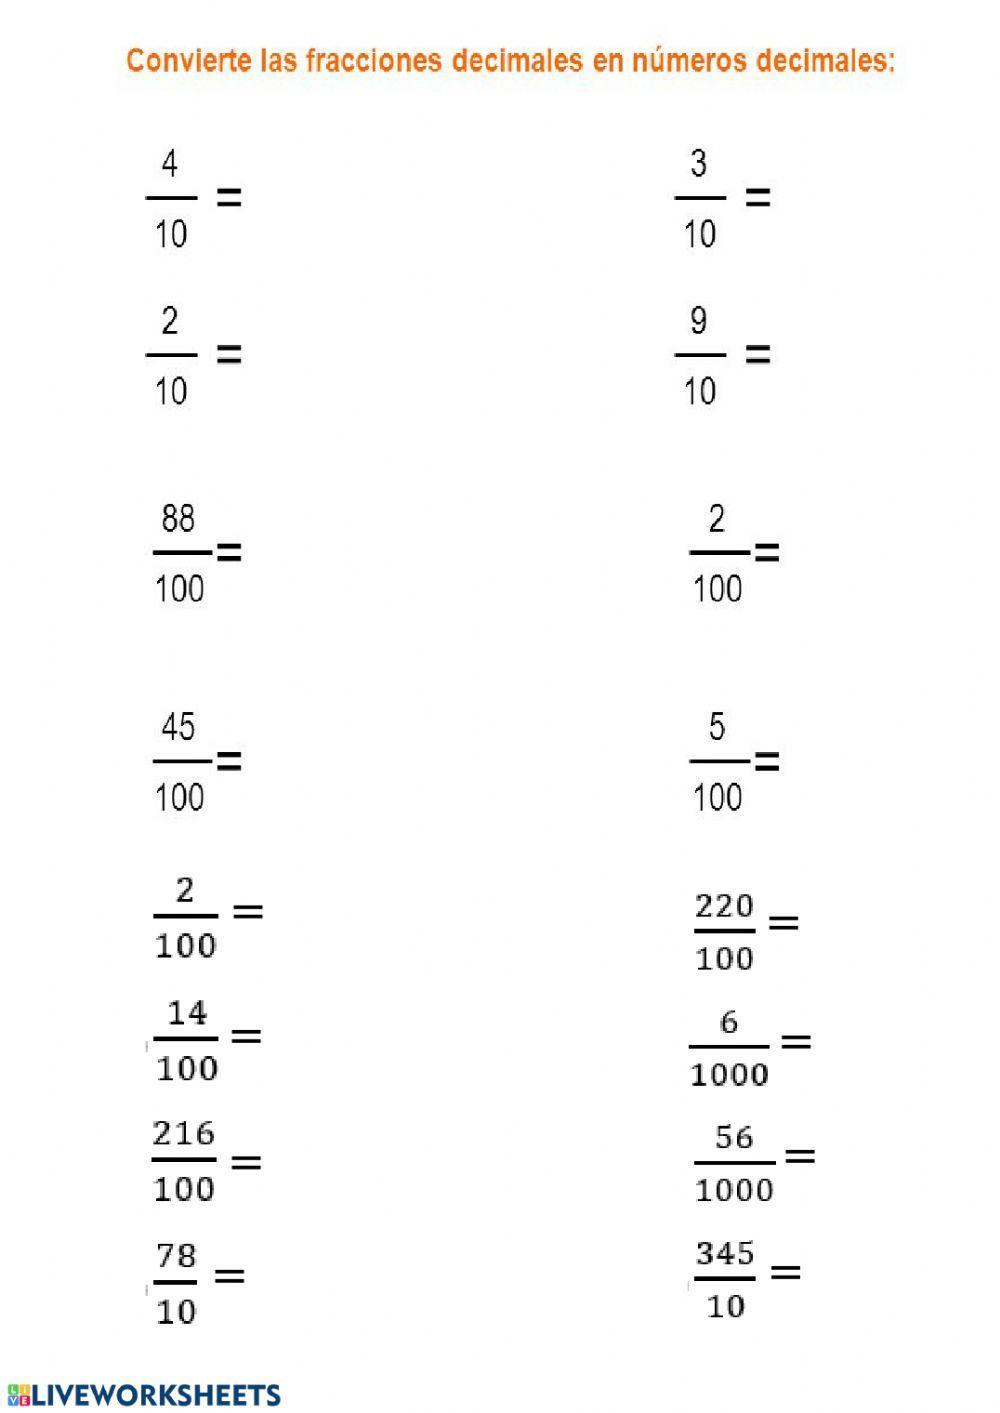 Fraccion decimal y número decimal